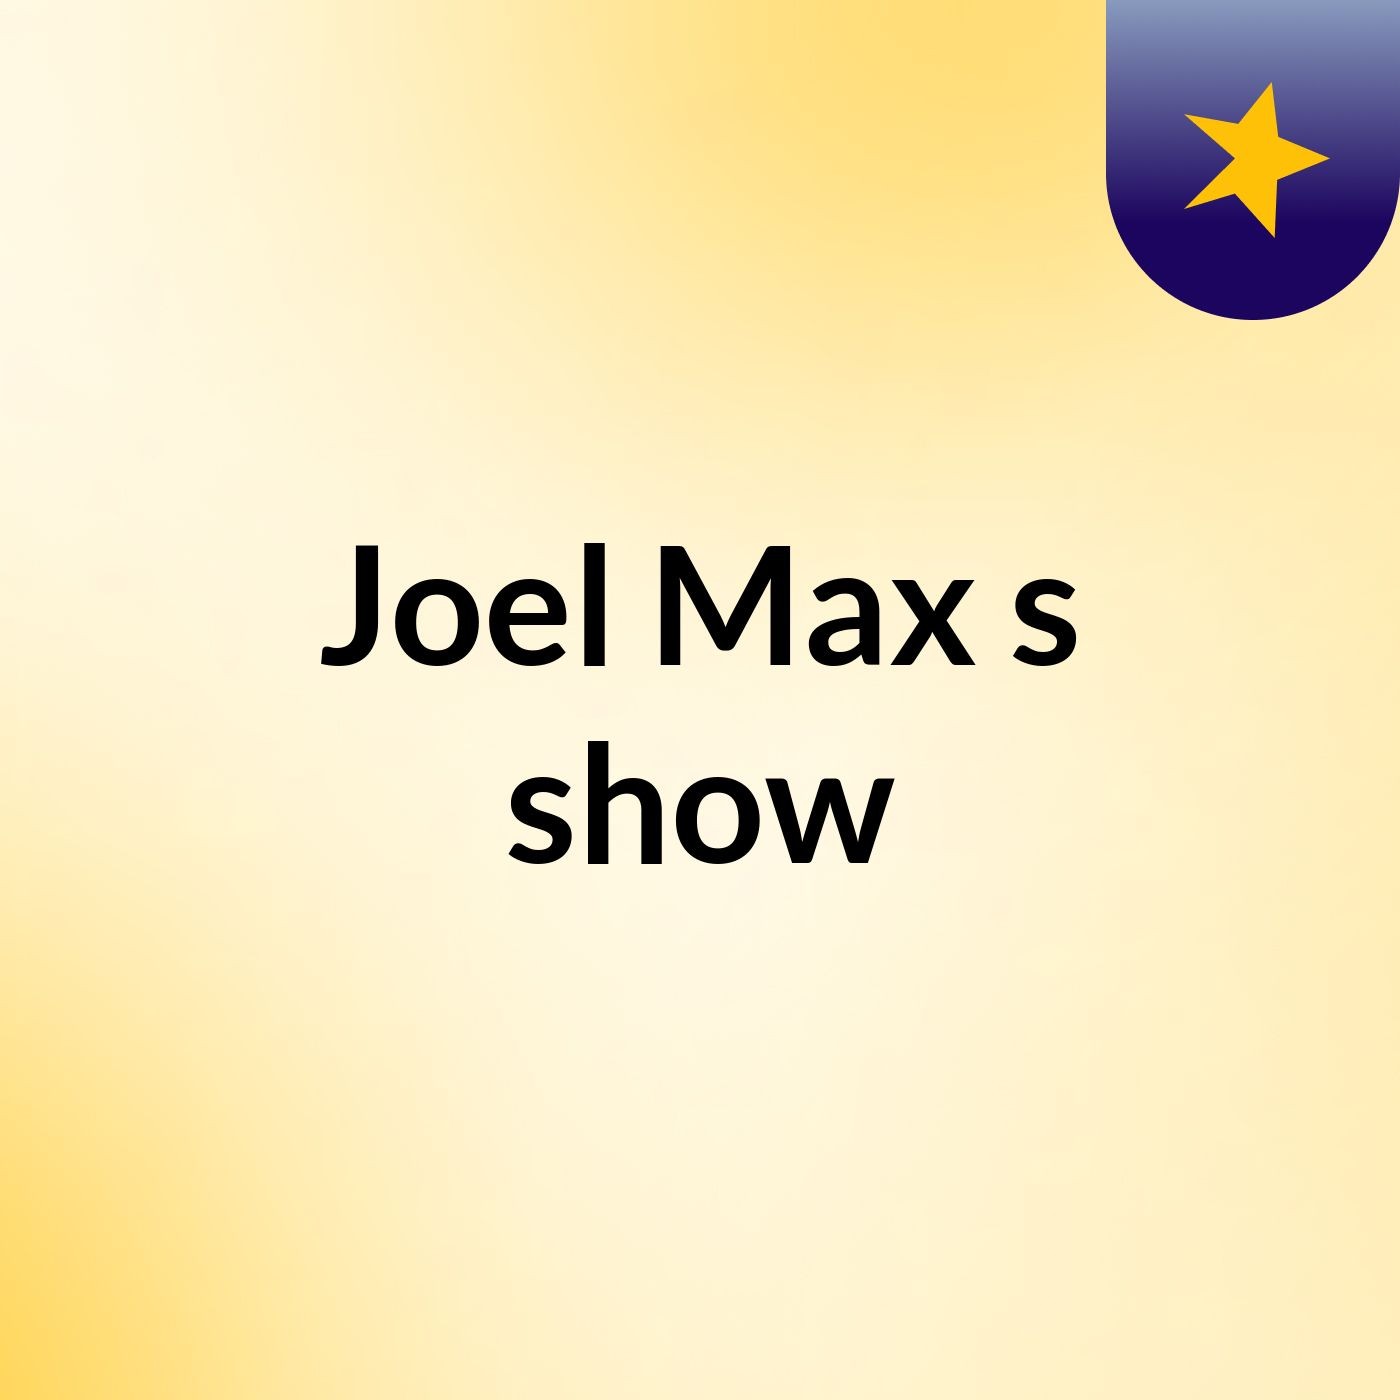 Joel Max's show